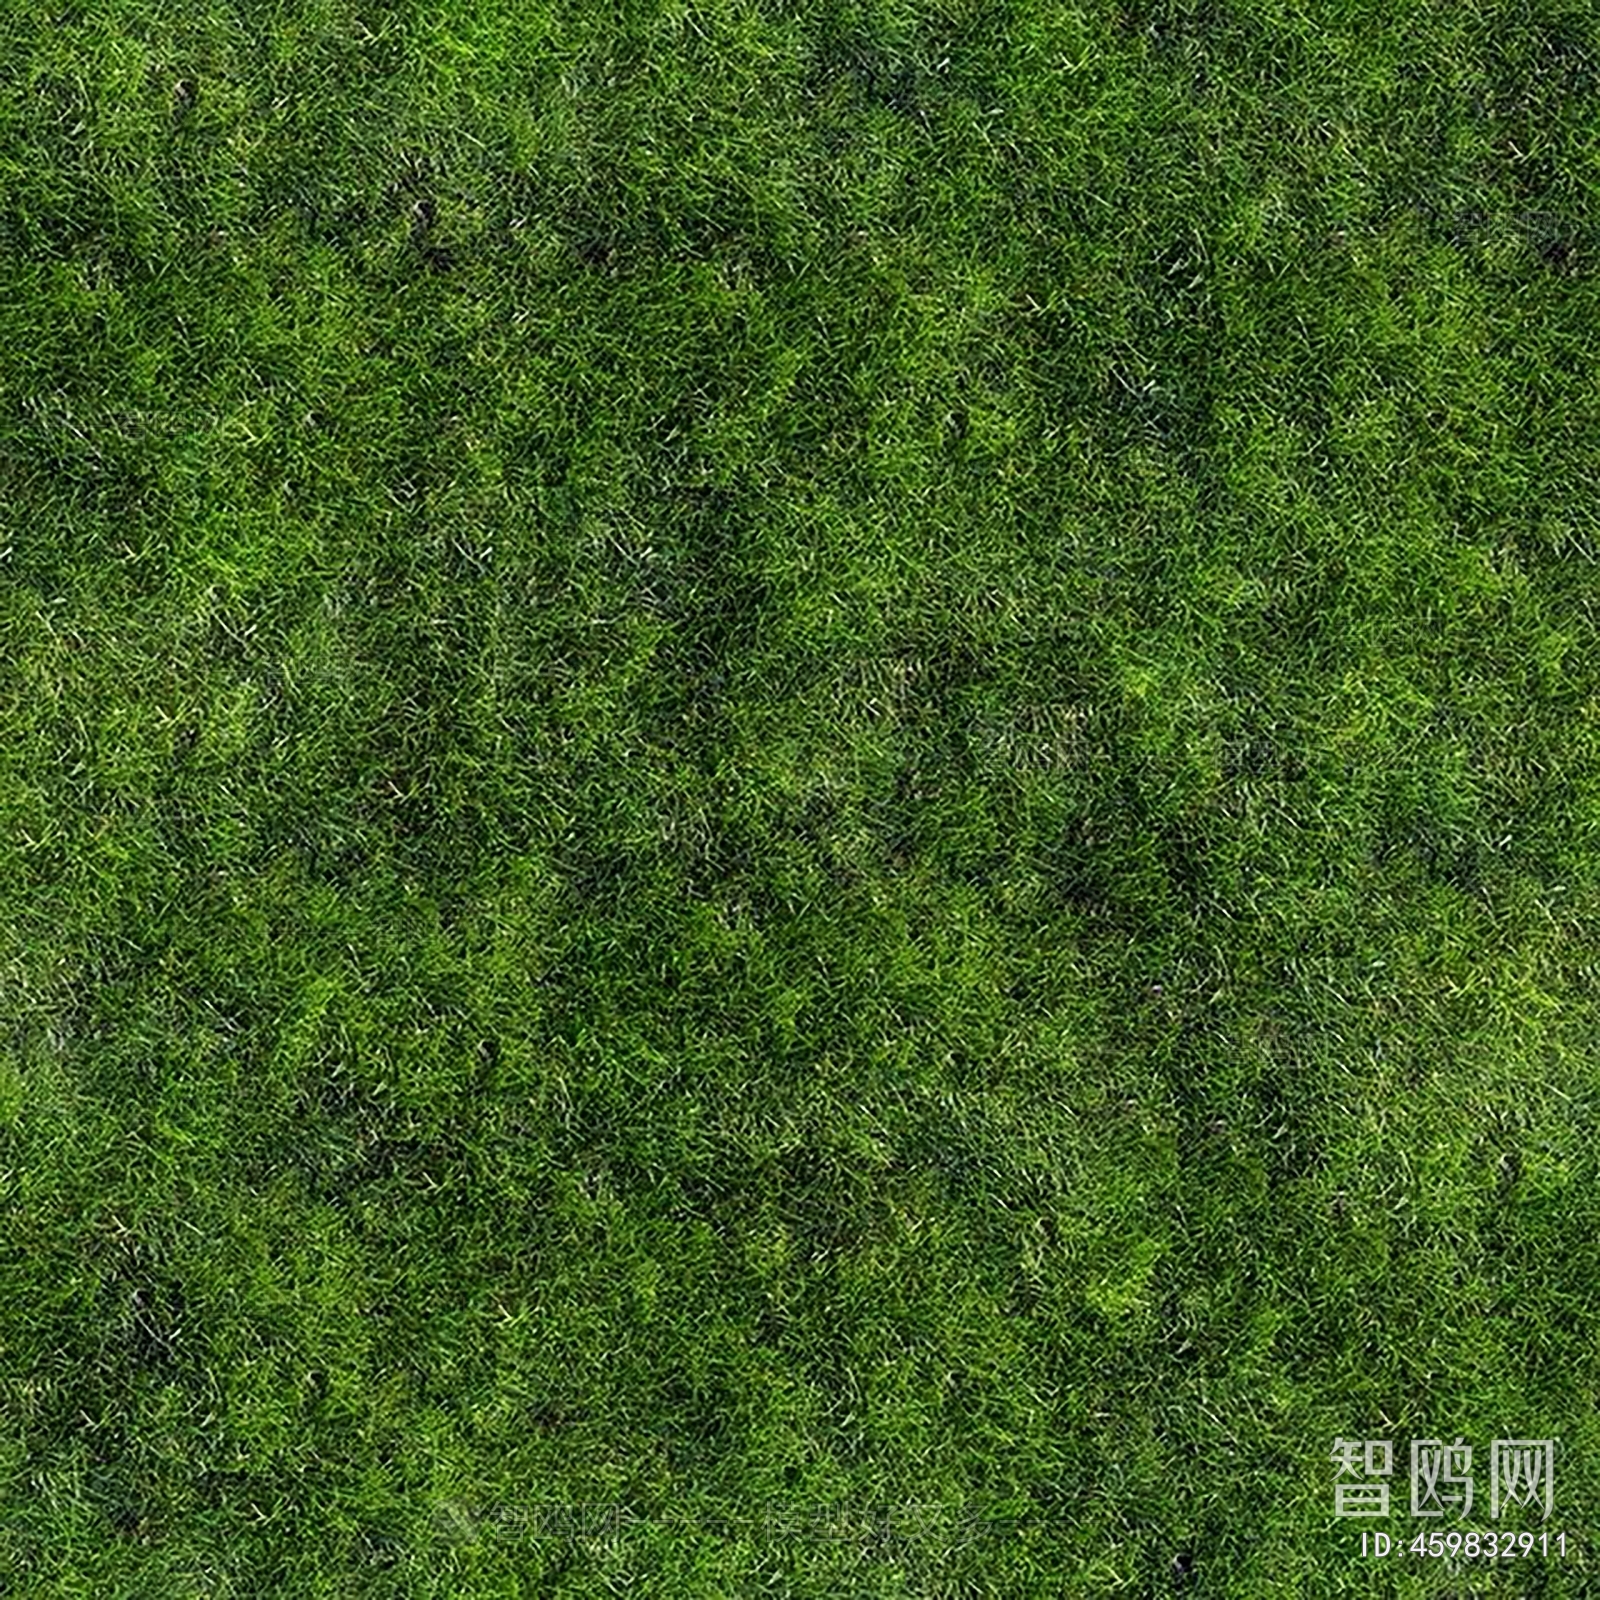 地面绿化草皮地面贴图